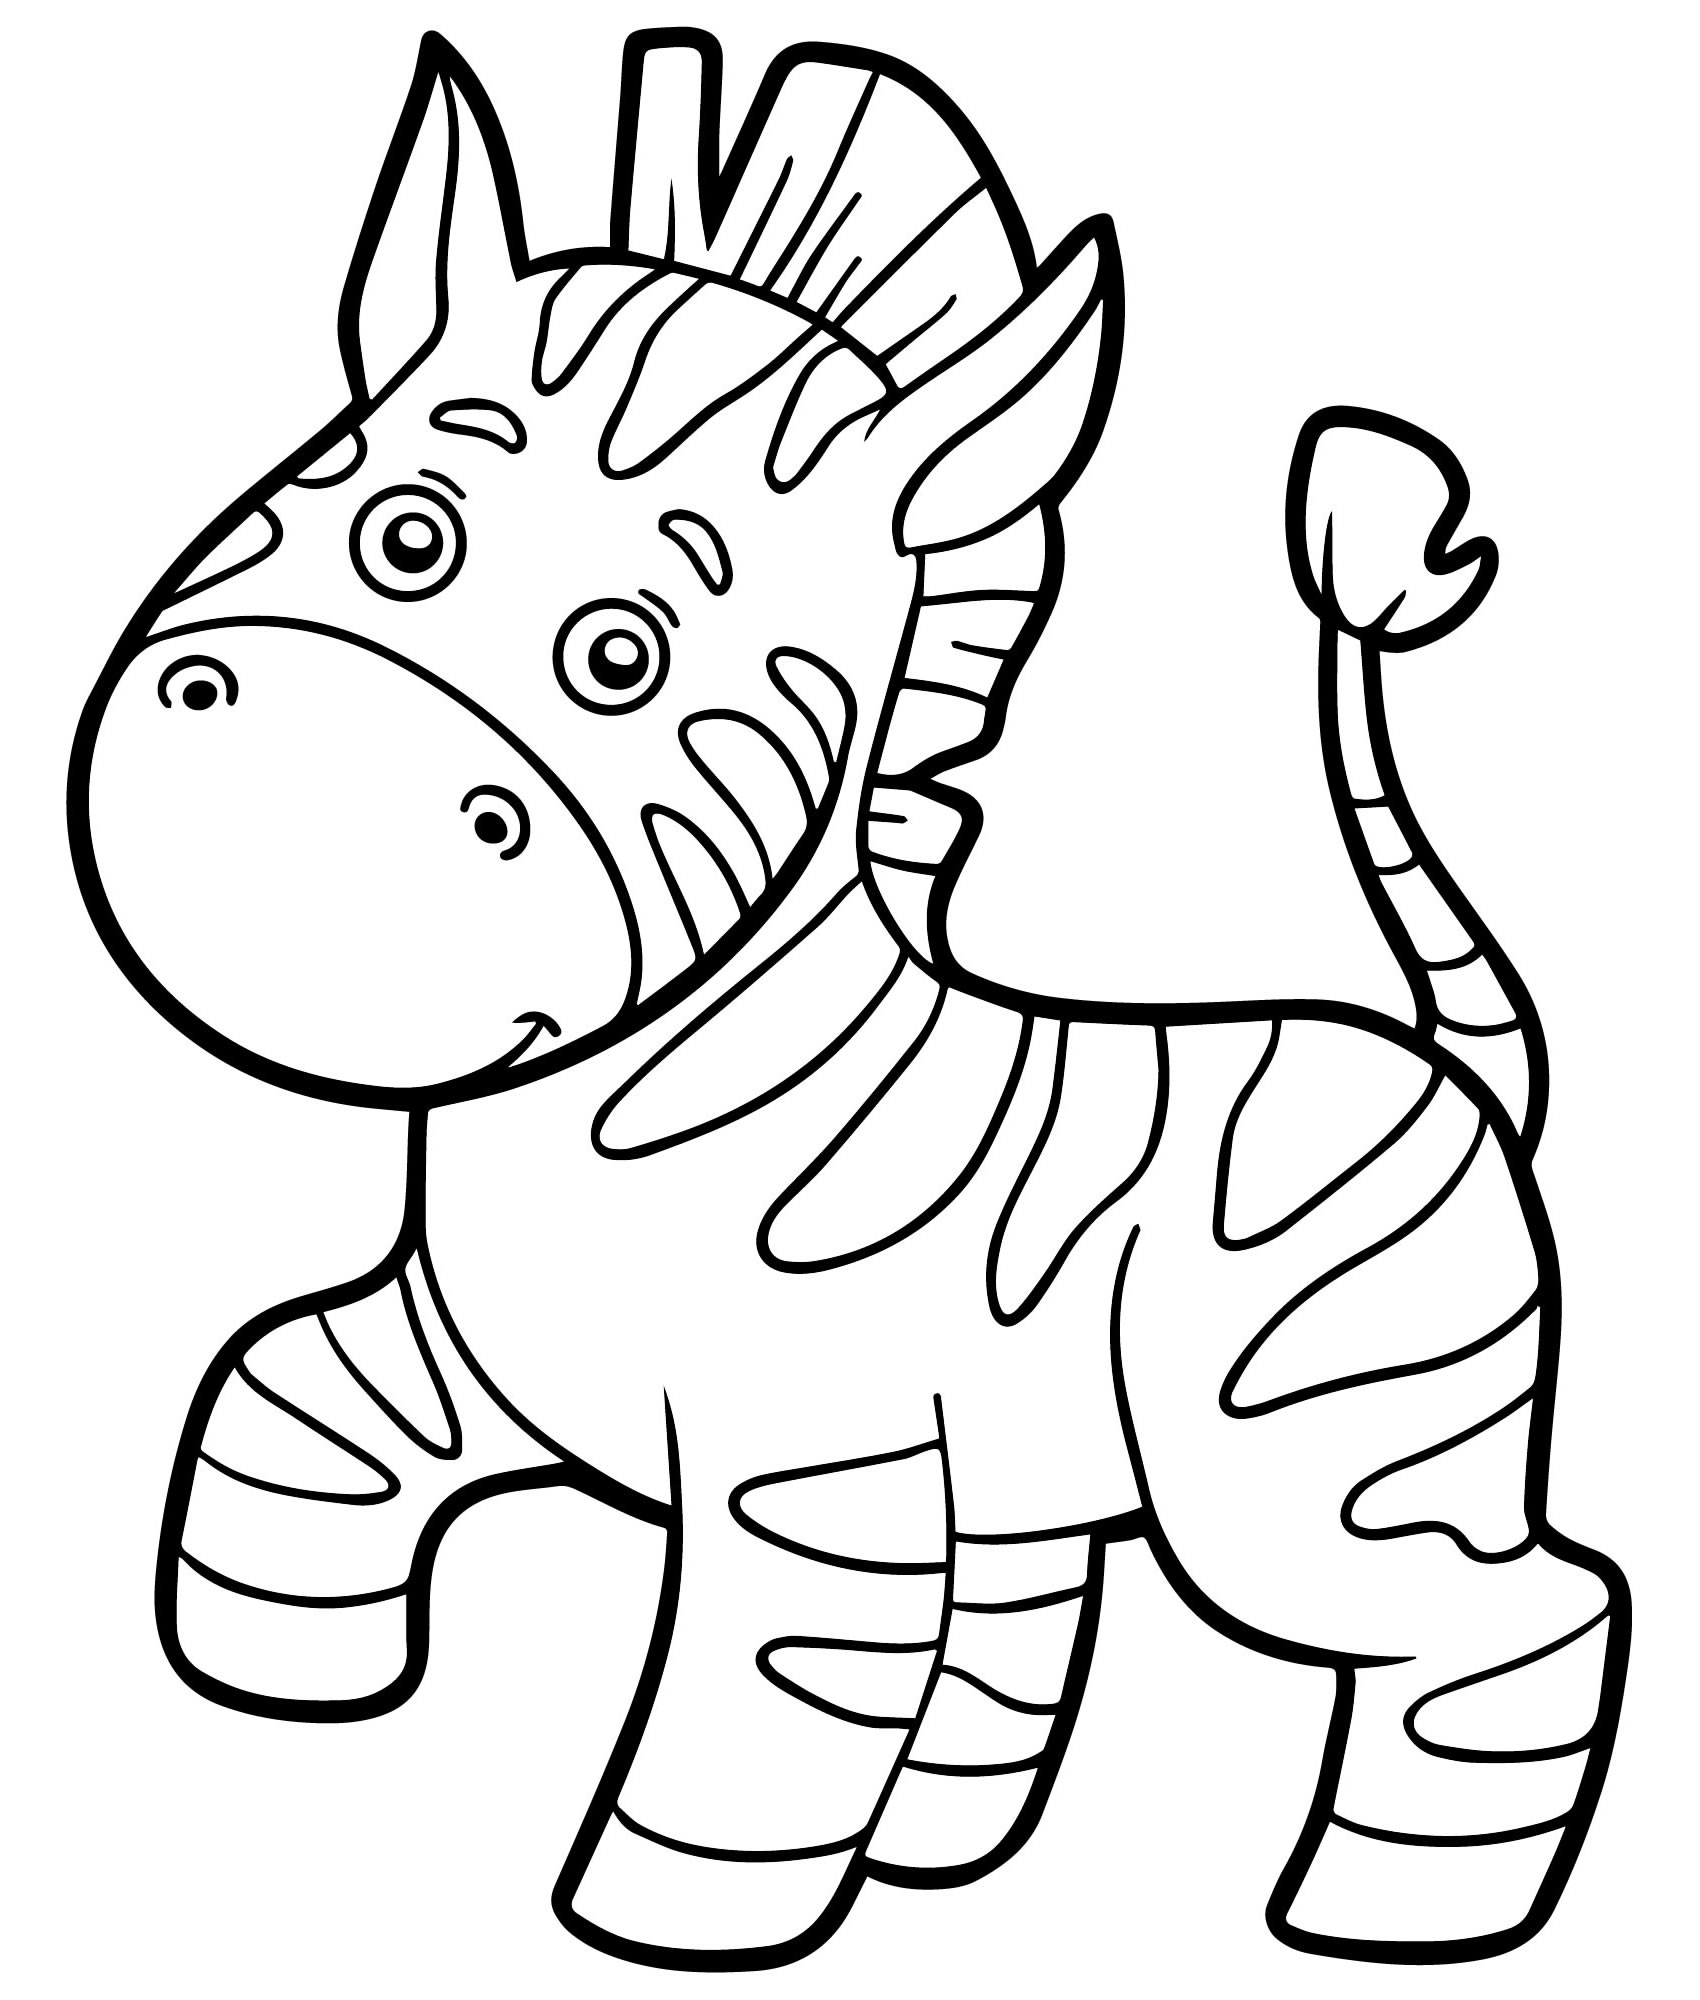 Зебра из мультика раскраска для детей